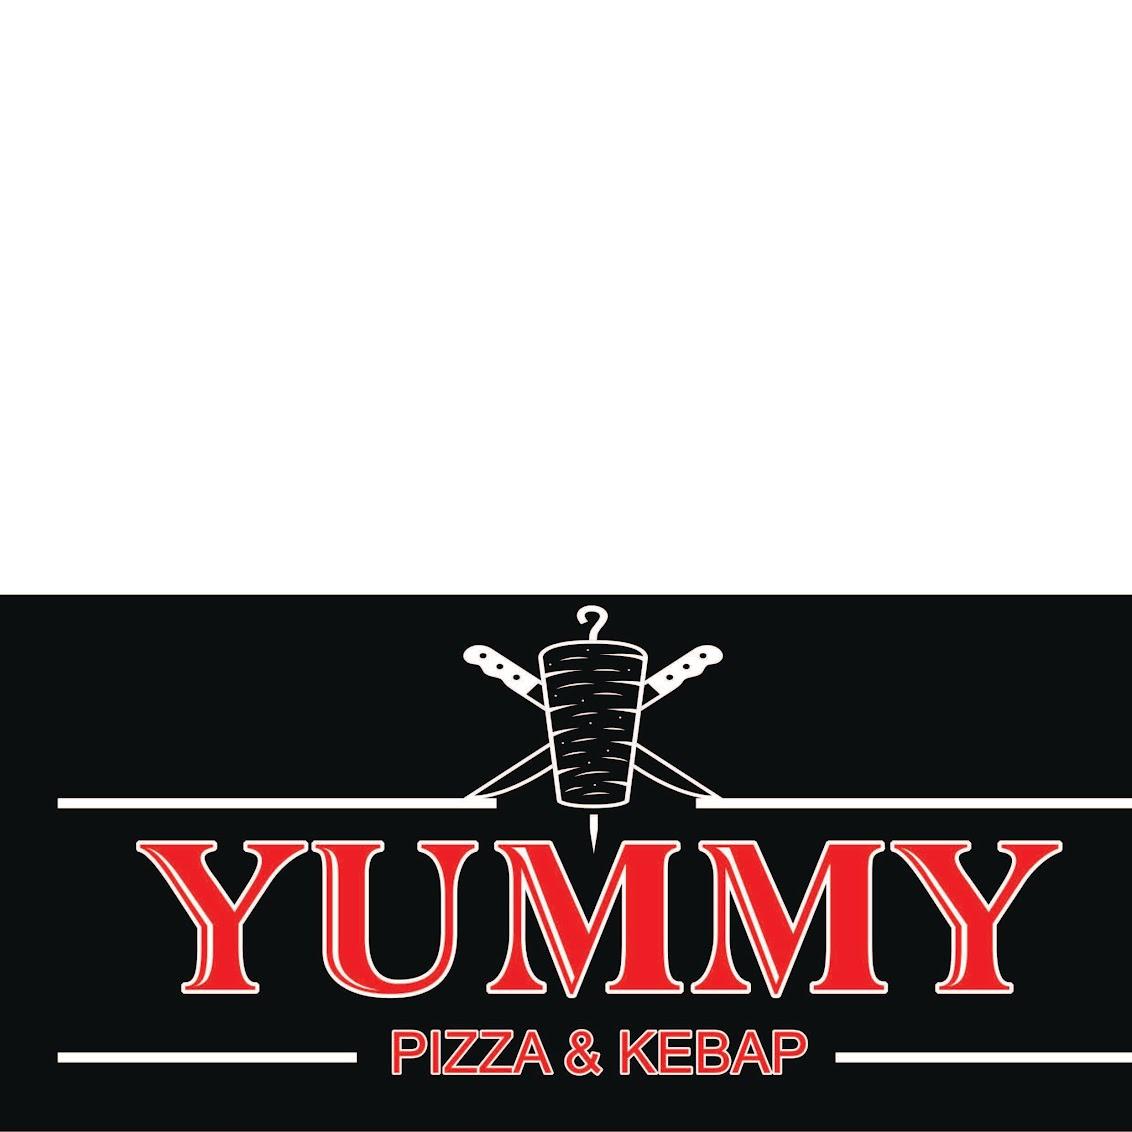 Restaurant "Yummy Pizza Kebap" in Eschbach